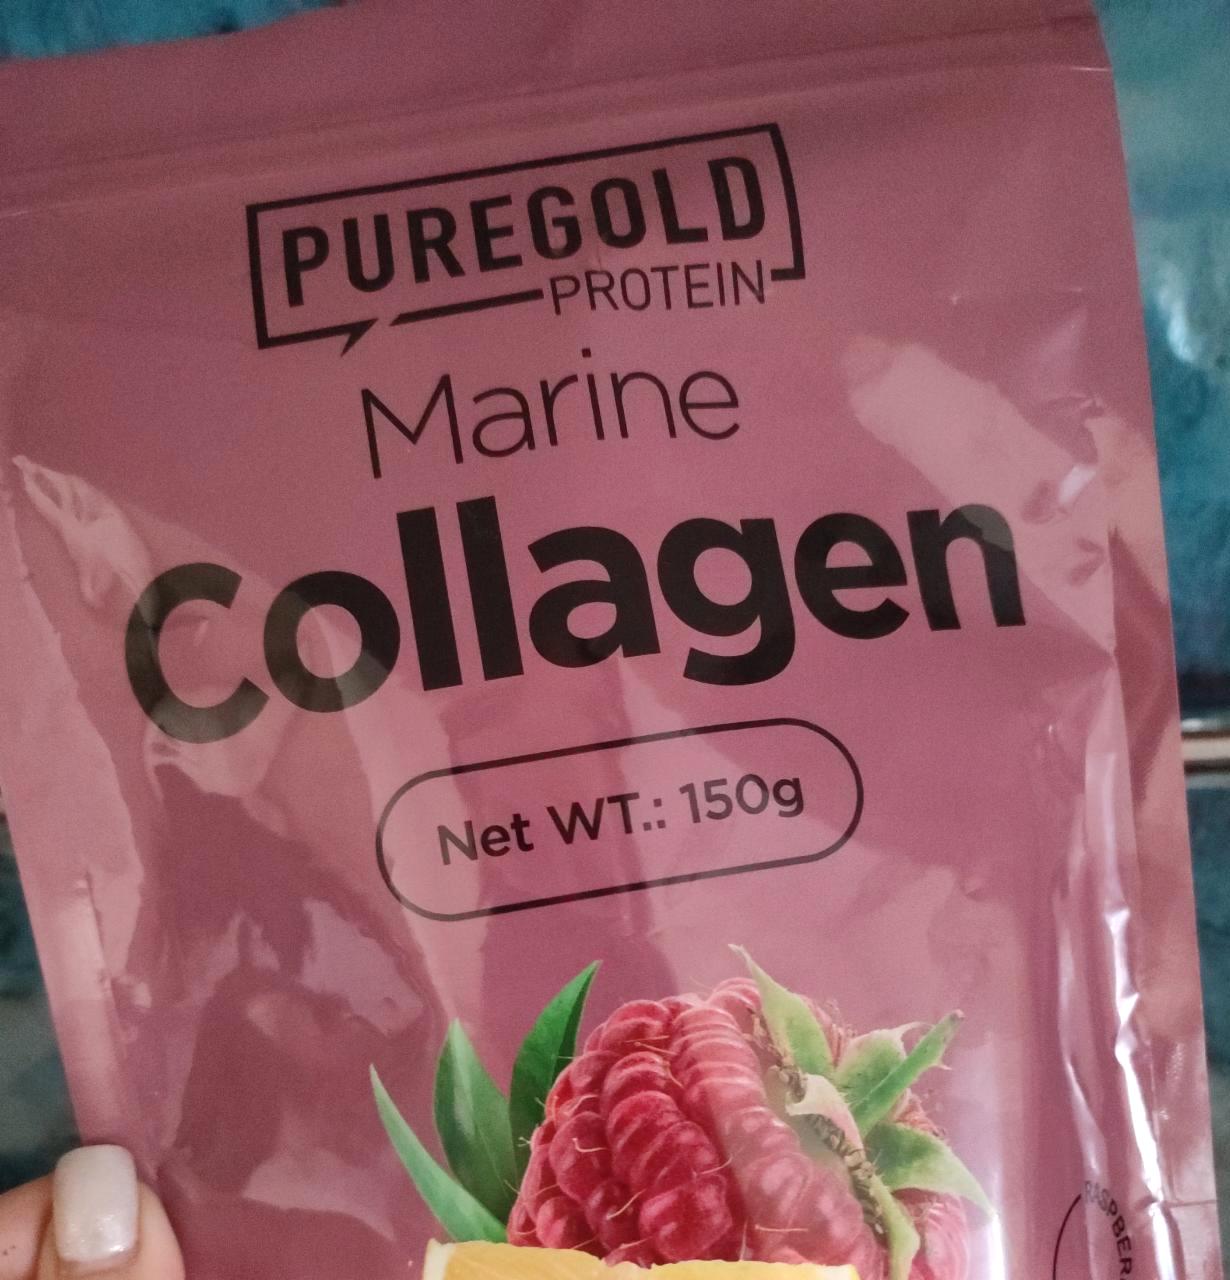 Képek - Collagen málna Puregold